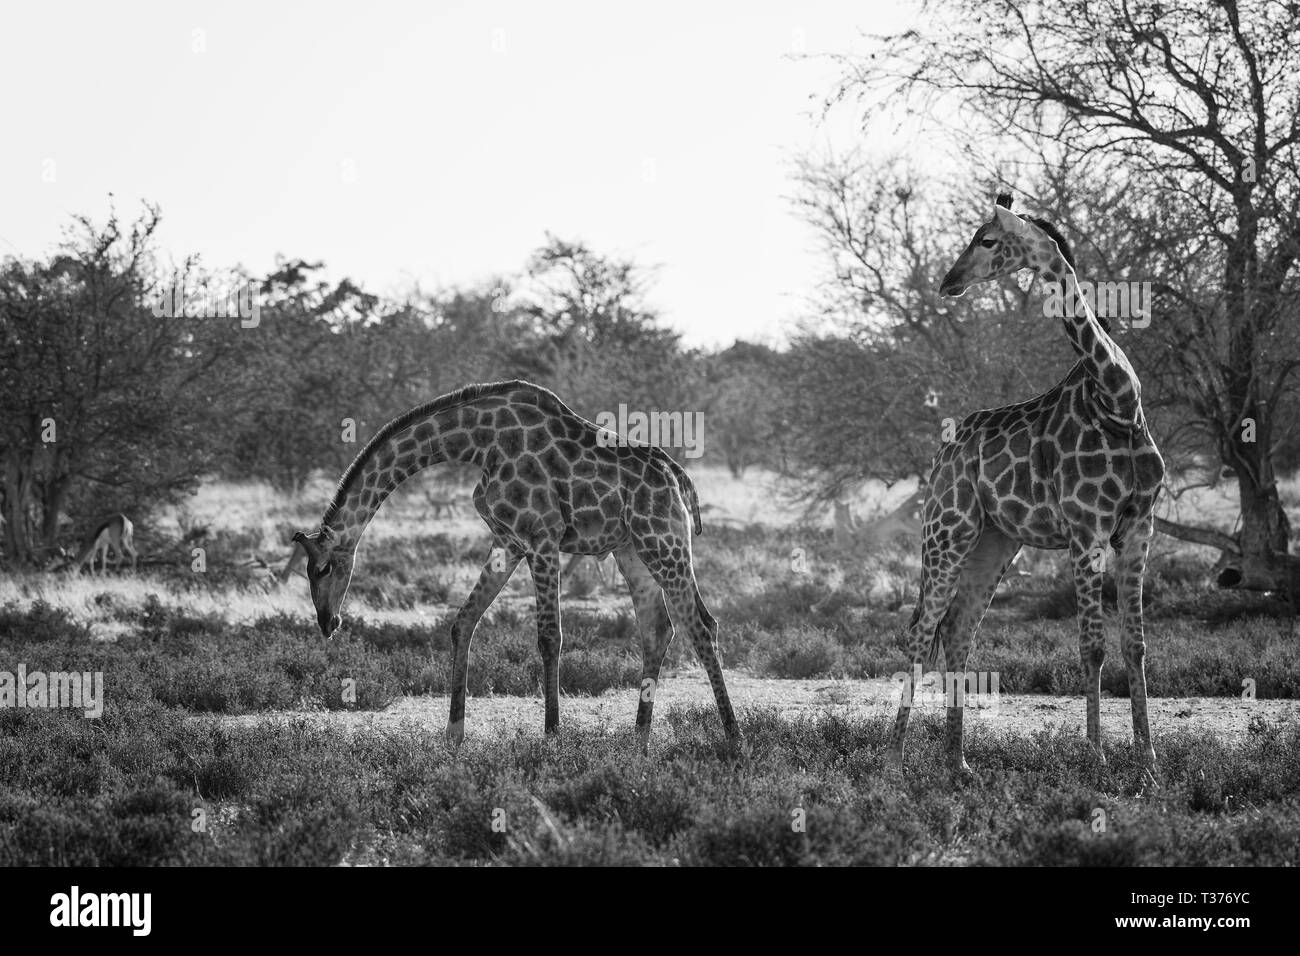 Zimbabwe savanna Black and White Stock Photos & Images - Alamy